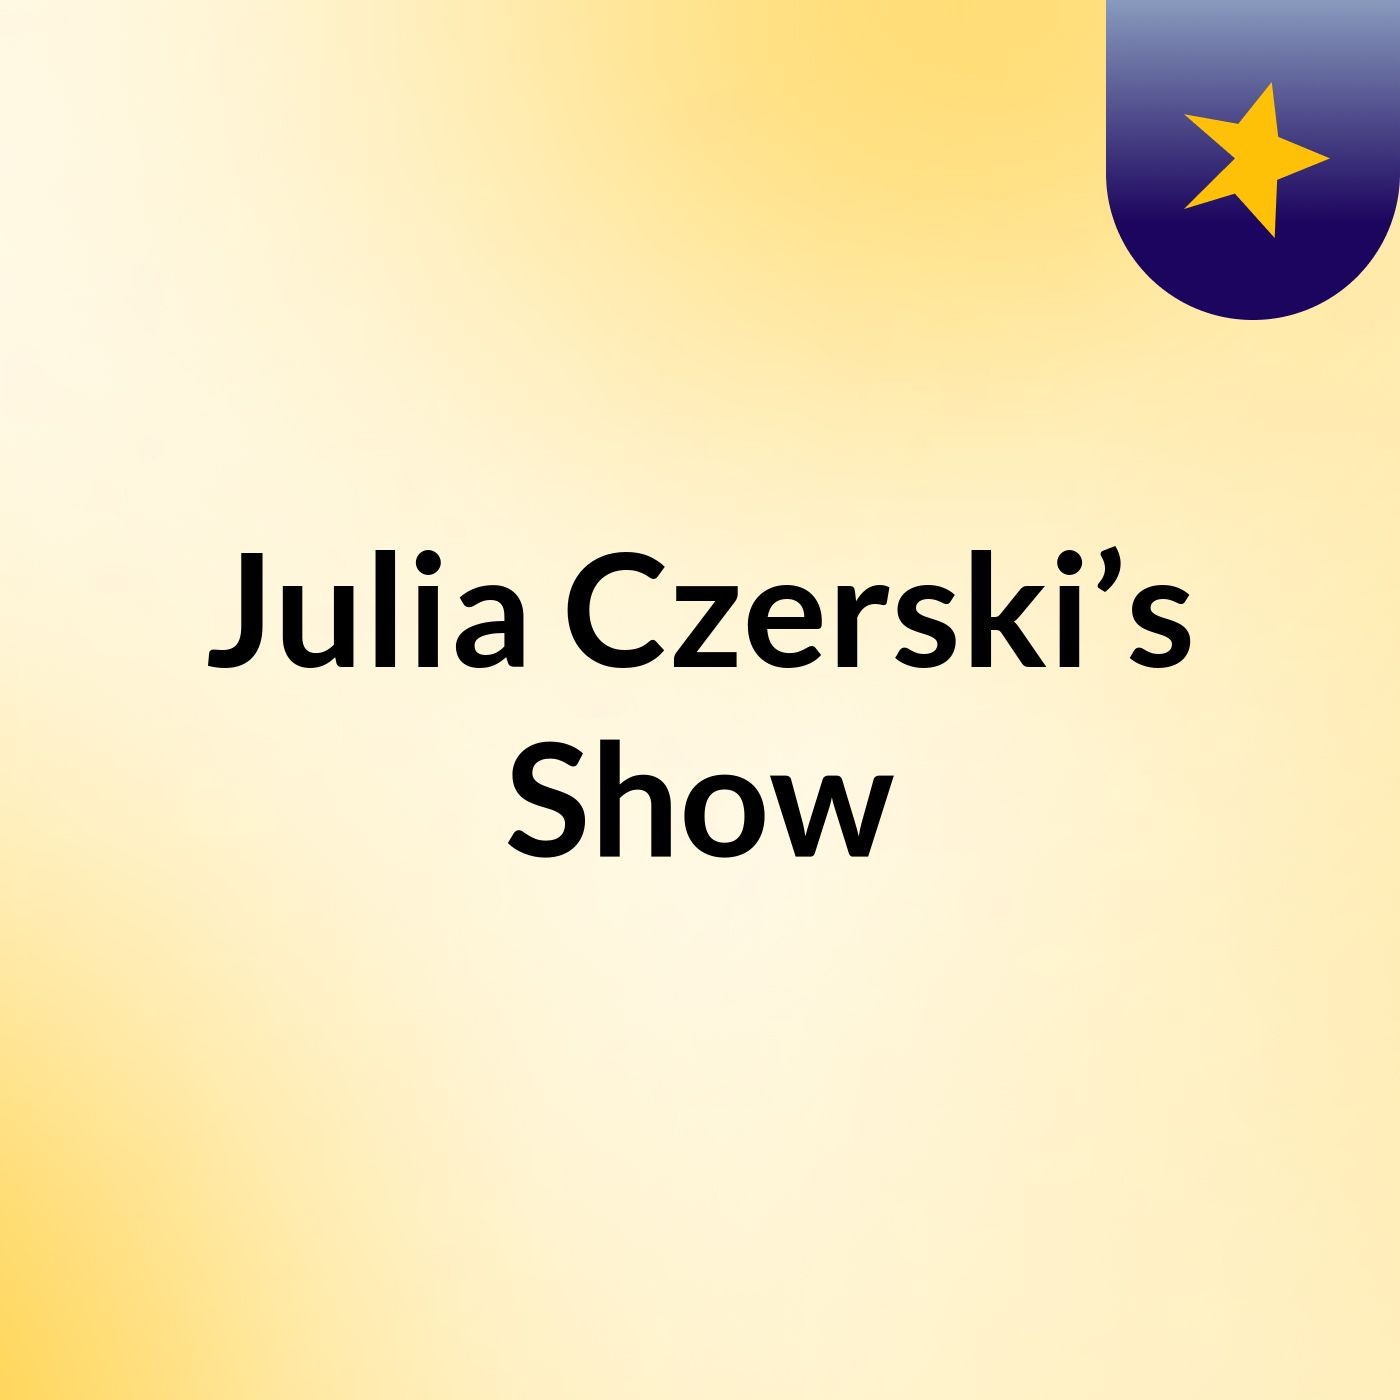 Julia Czerski’s Show